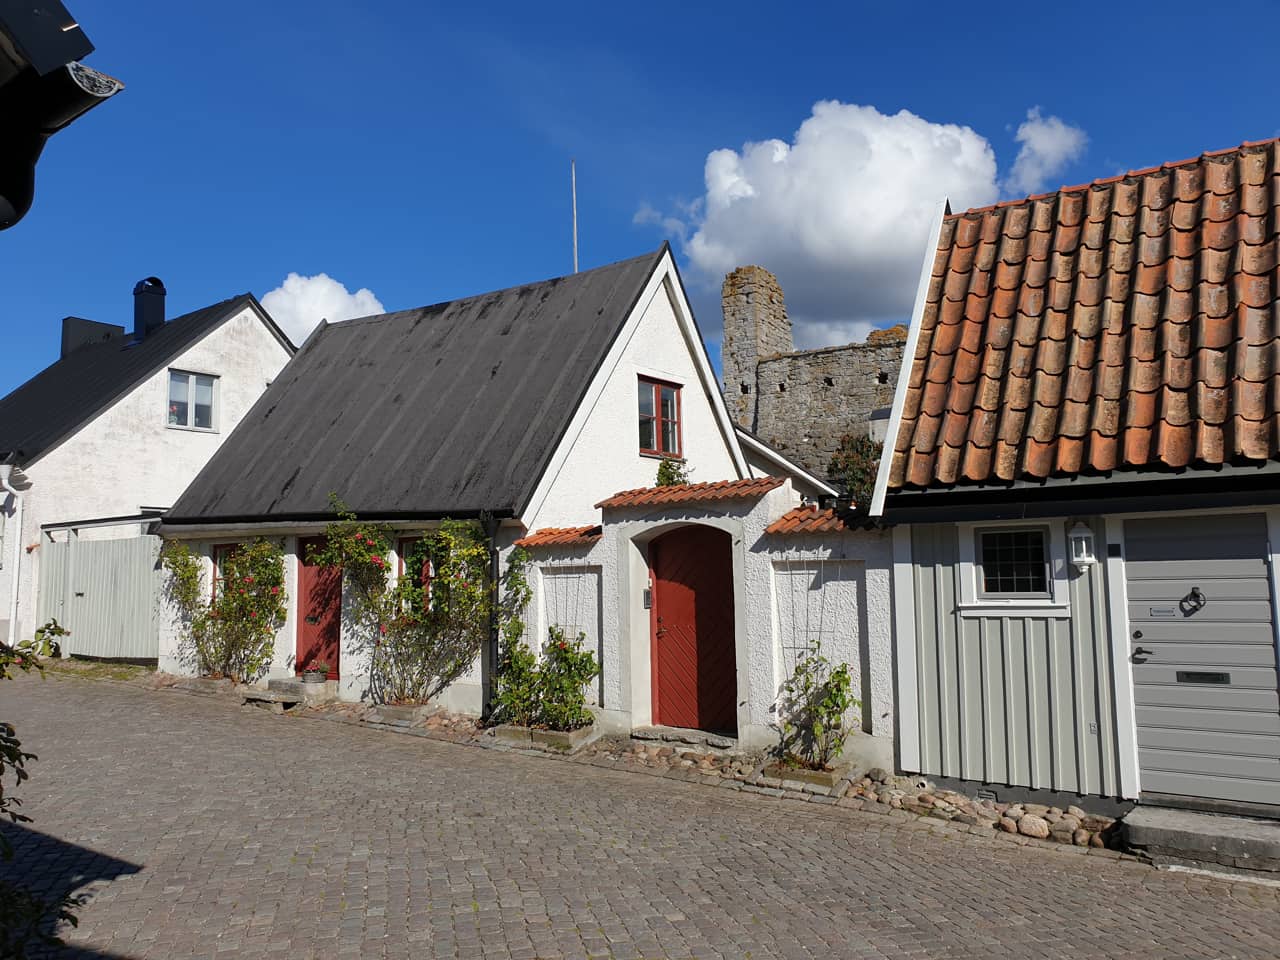 Häuser in Visby, der Hauptstadt der schwedischen Insel Gotland